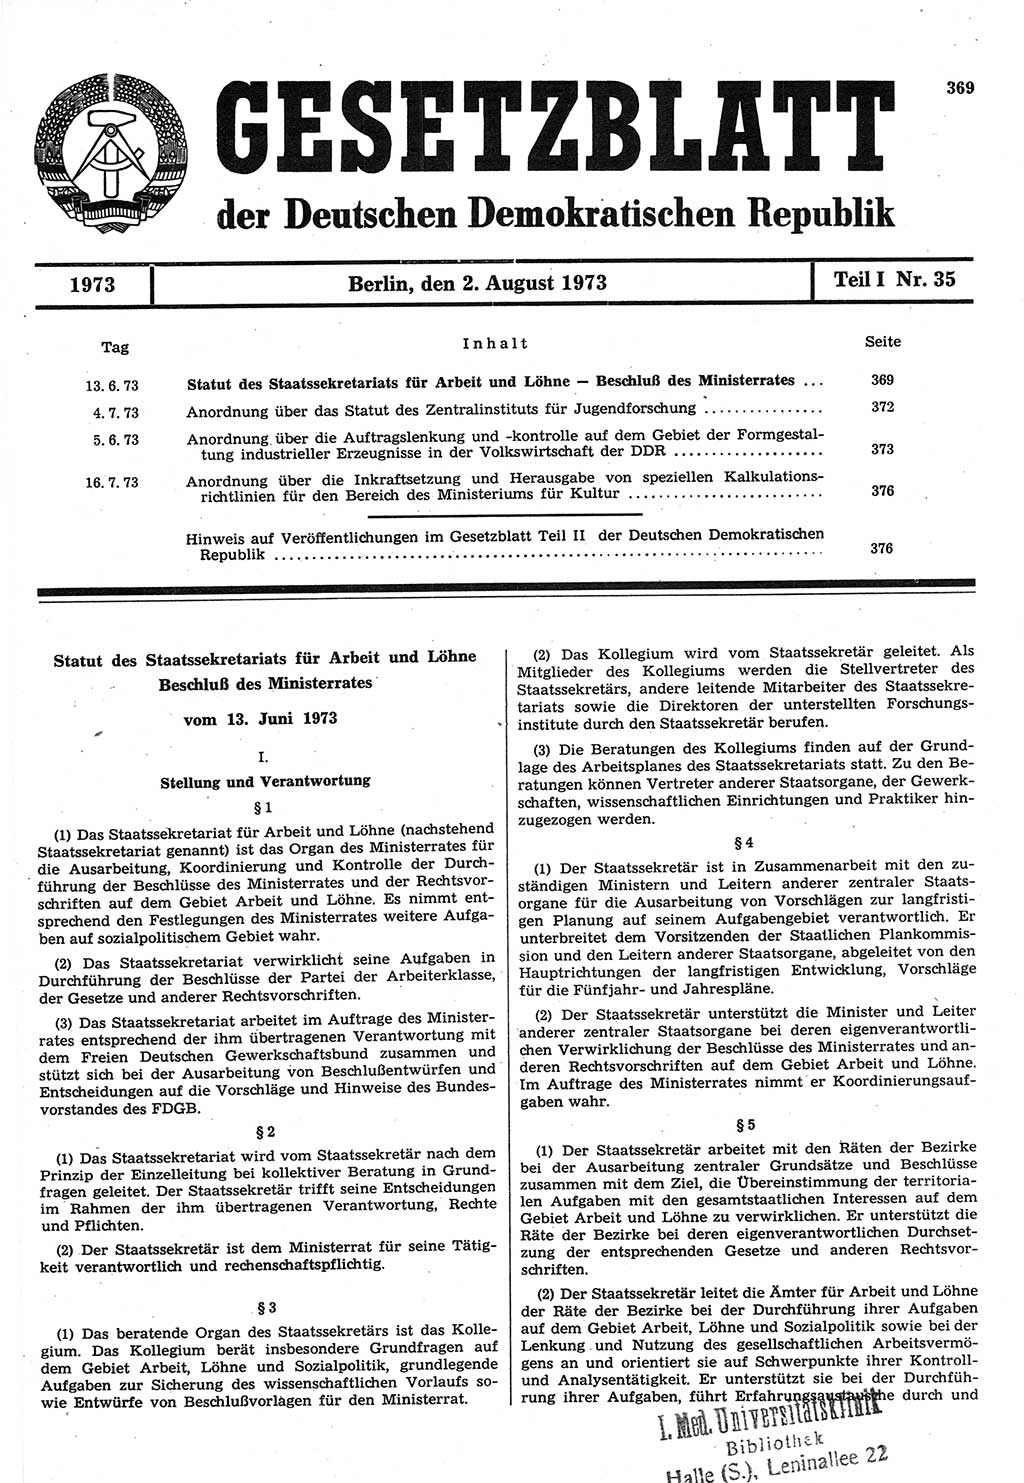 Gesetzblatt (GBl.) der Deutschen Demokratischen Republik (DDR) Teil Ⅰ 1973, Seite 369 (GBl. DDR Ⅰ 1973, S. 369)